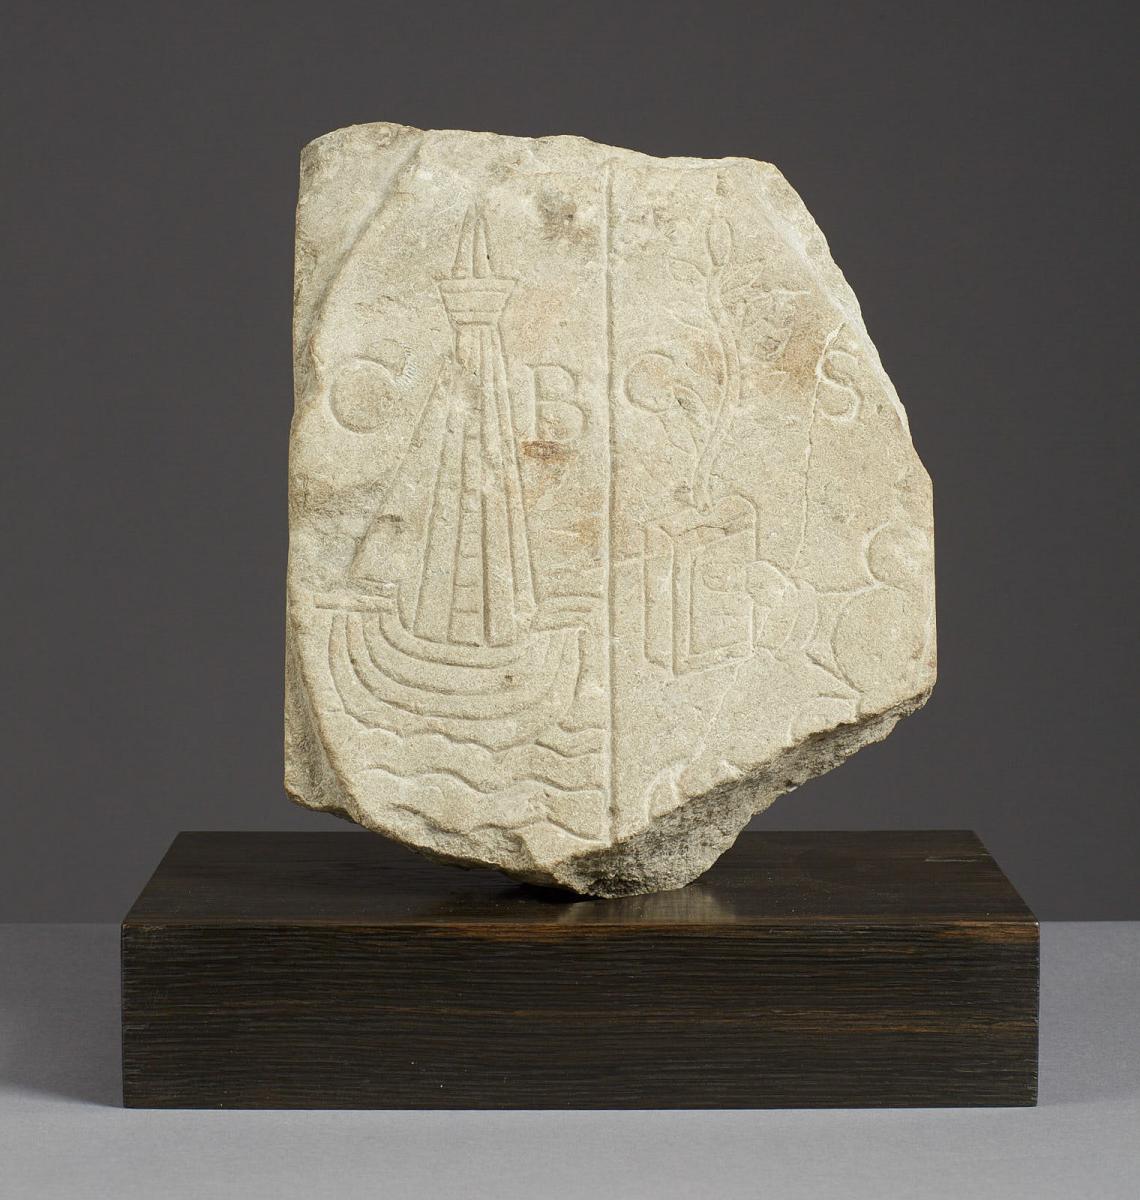 Mid 16th Century Commemorative Stone Marker   British 1550-1570